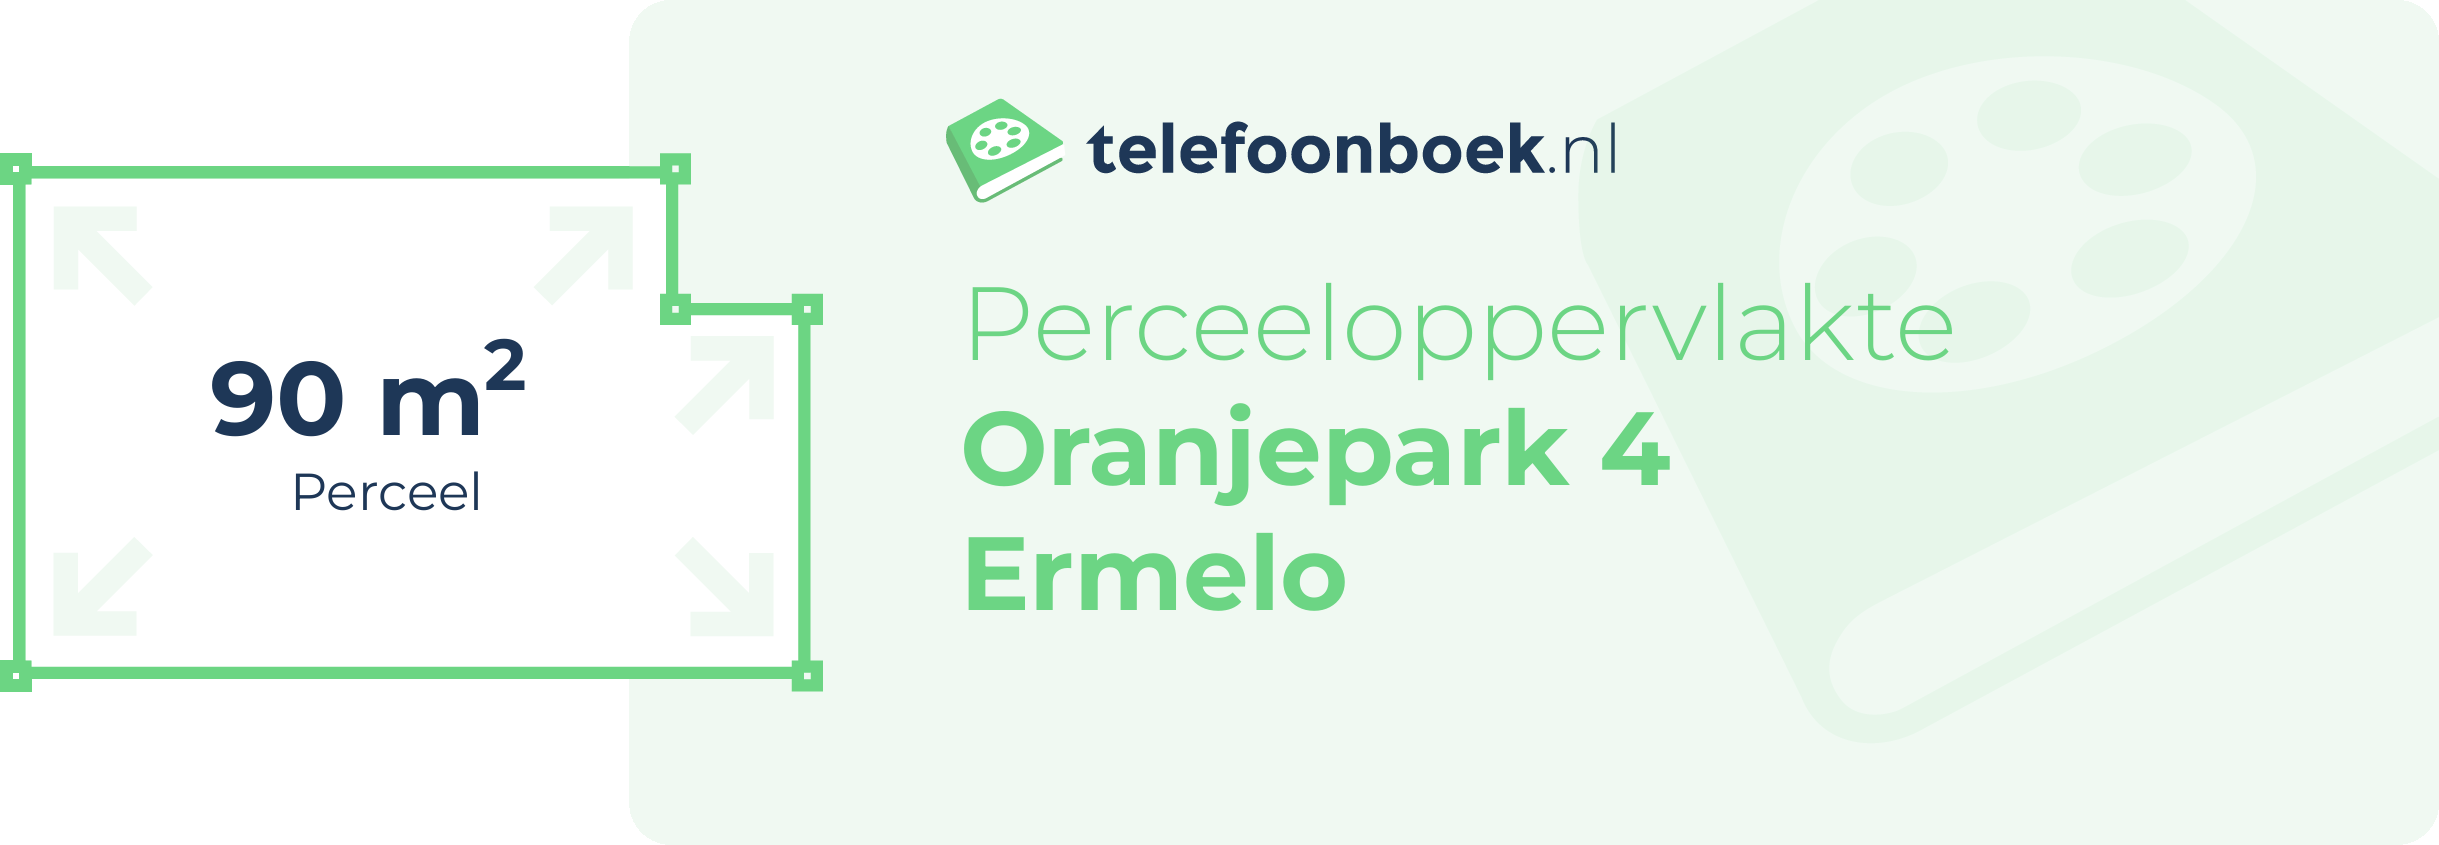 Perceeloppervlakte Oranjepark 4 Ermelo